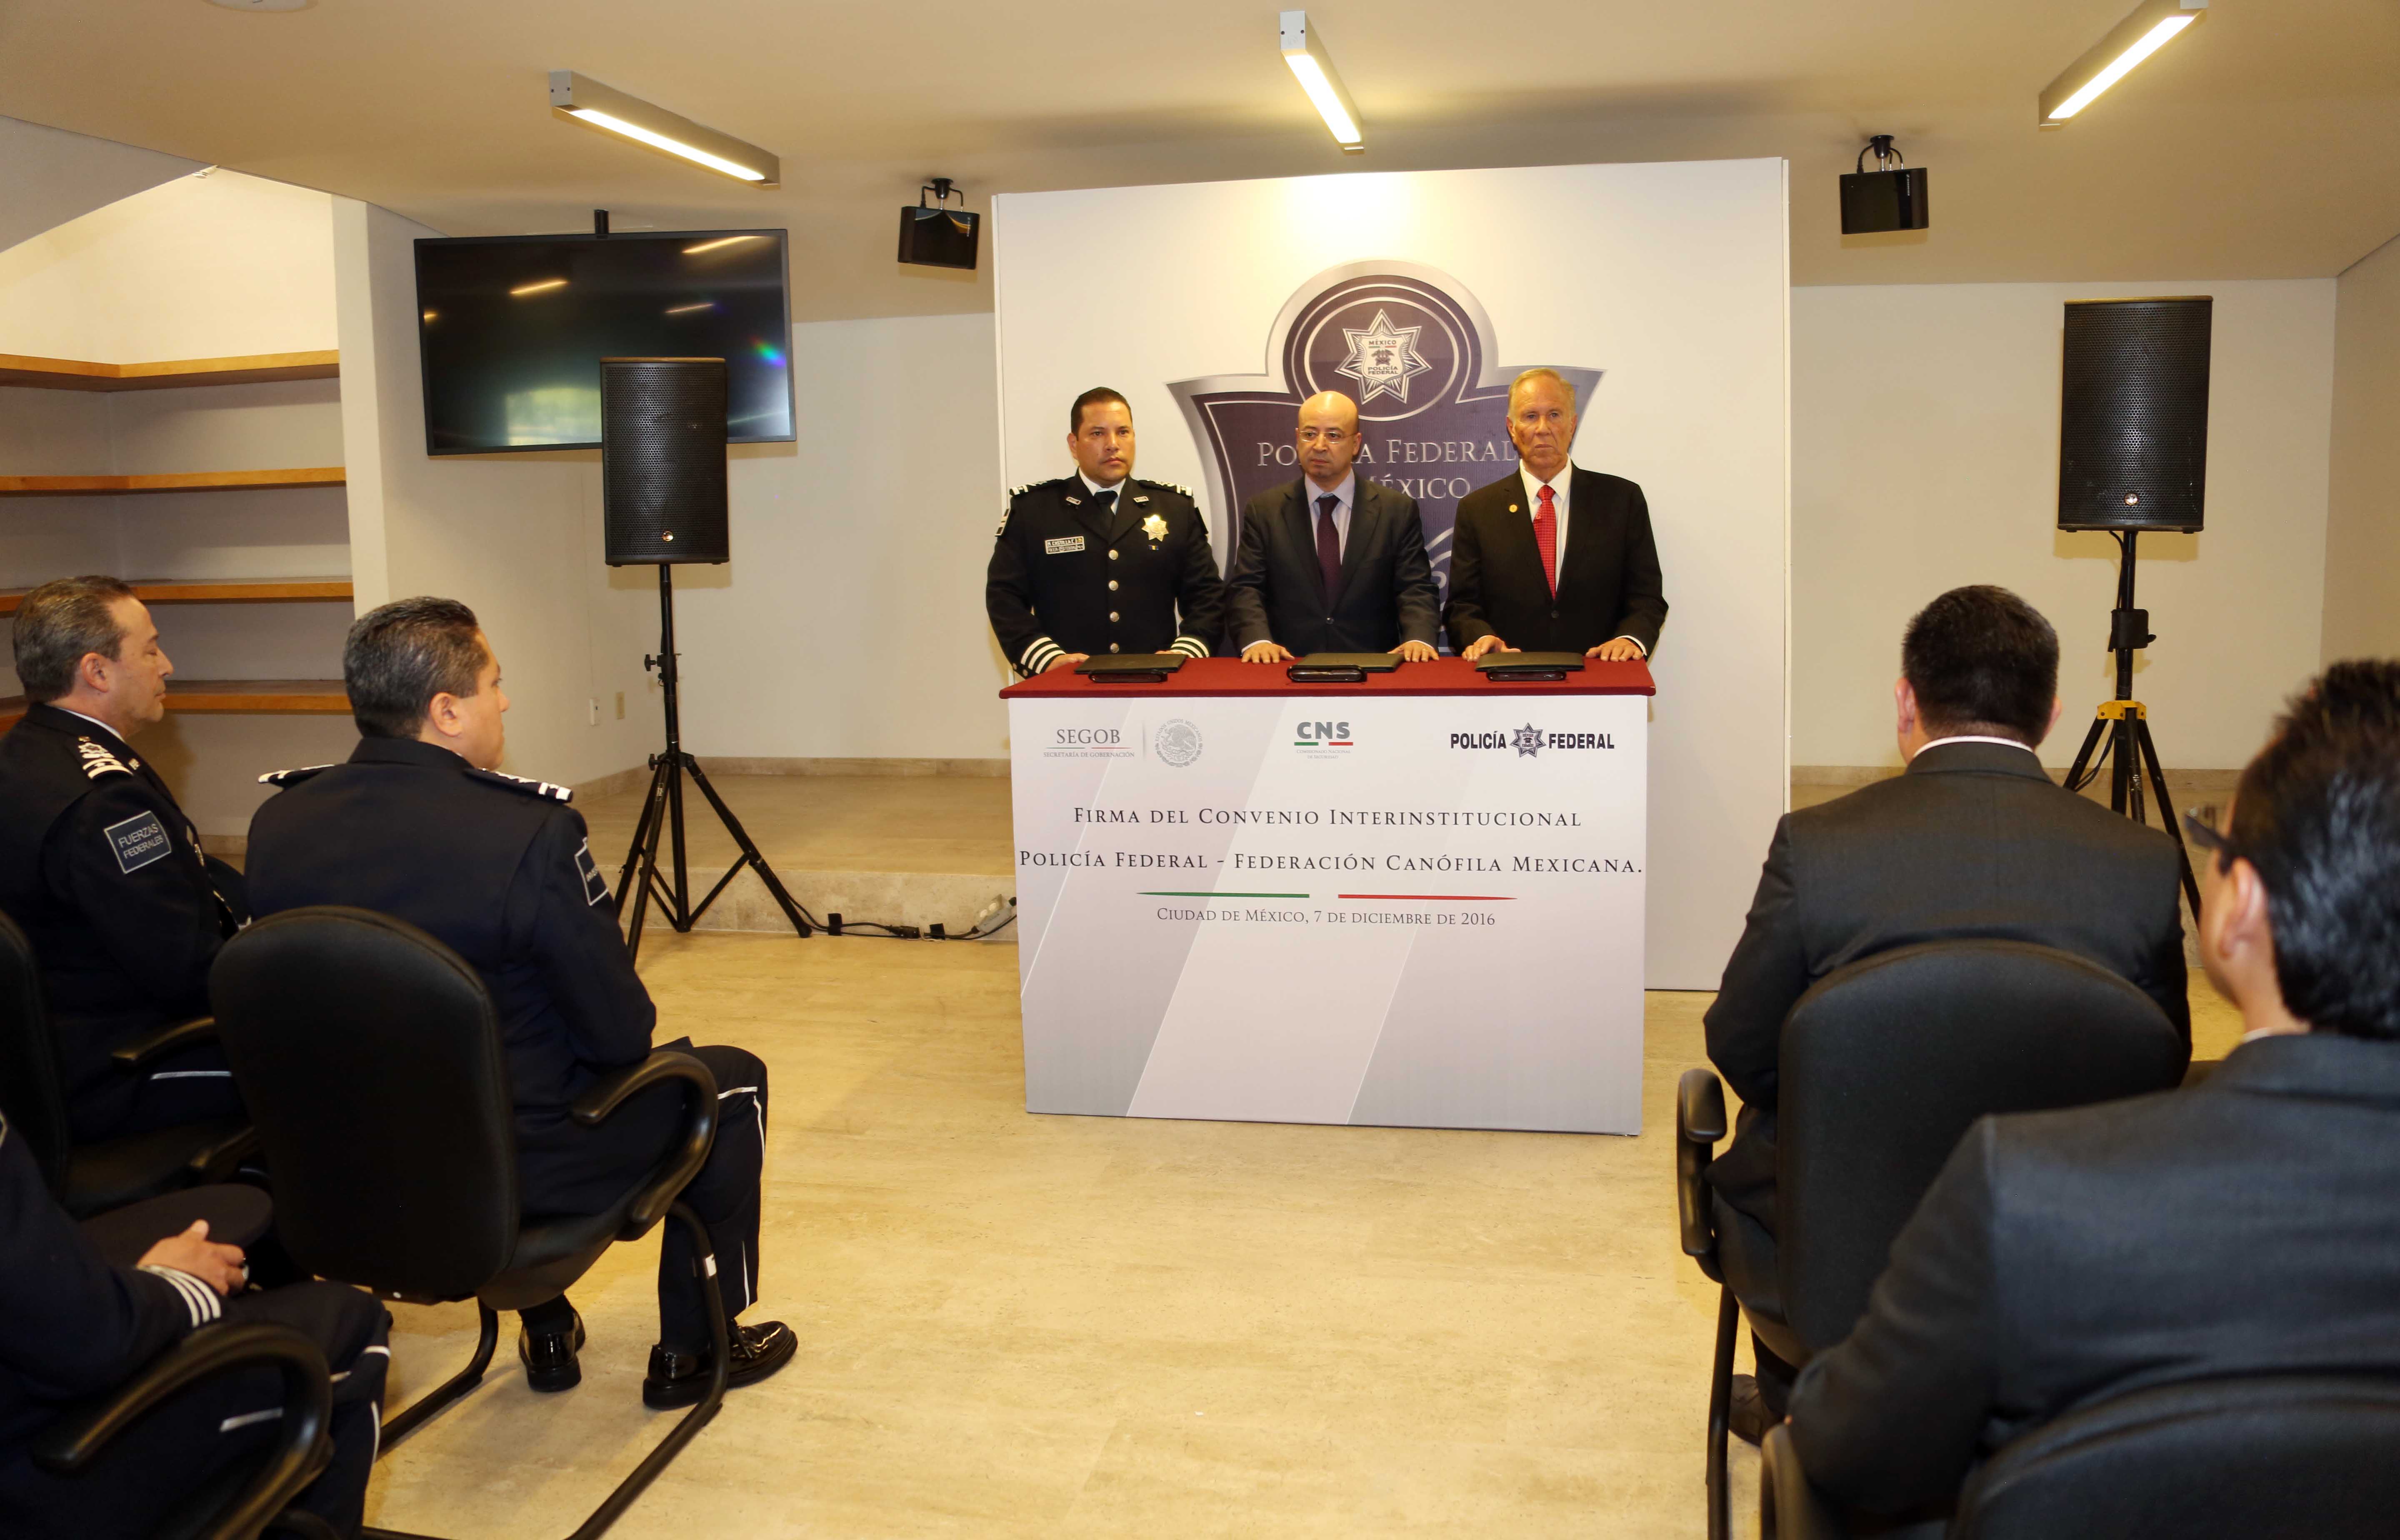 Firma del convenio interinstitucional  Policía Federal-Federación Canófila Mexicana 